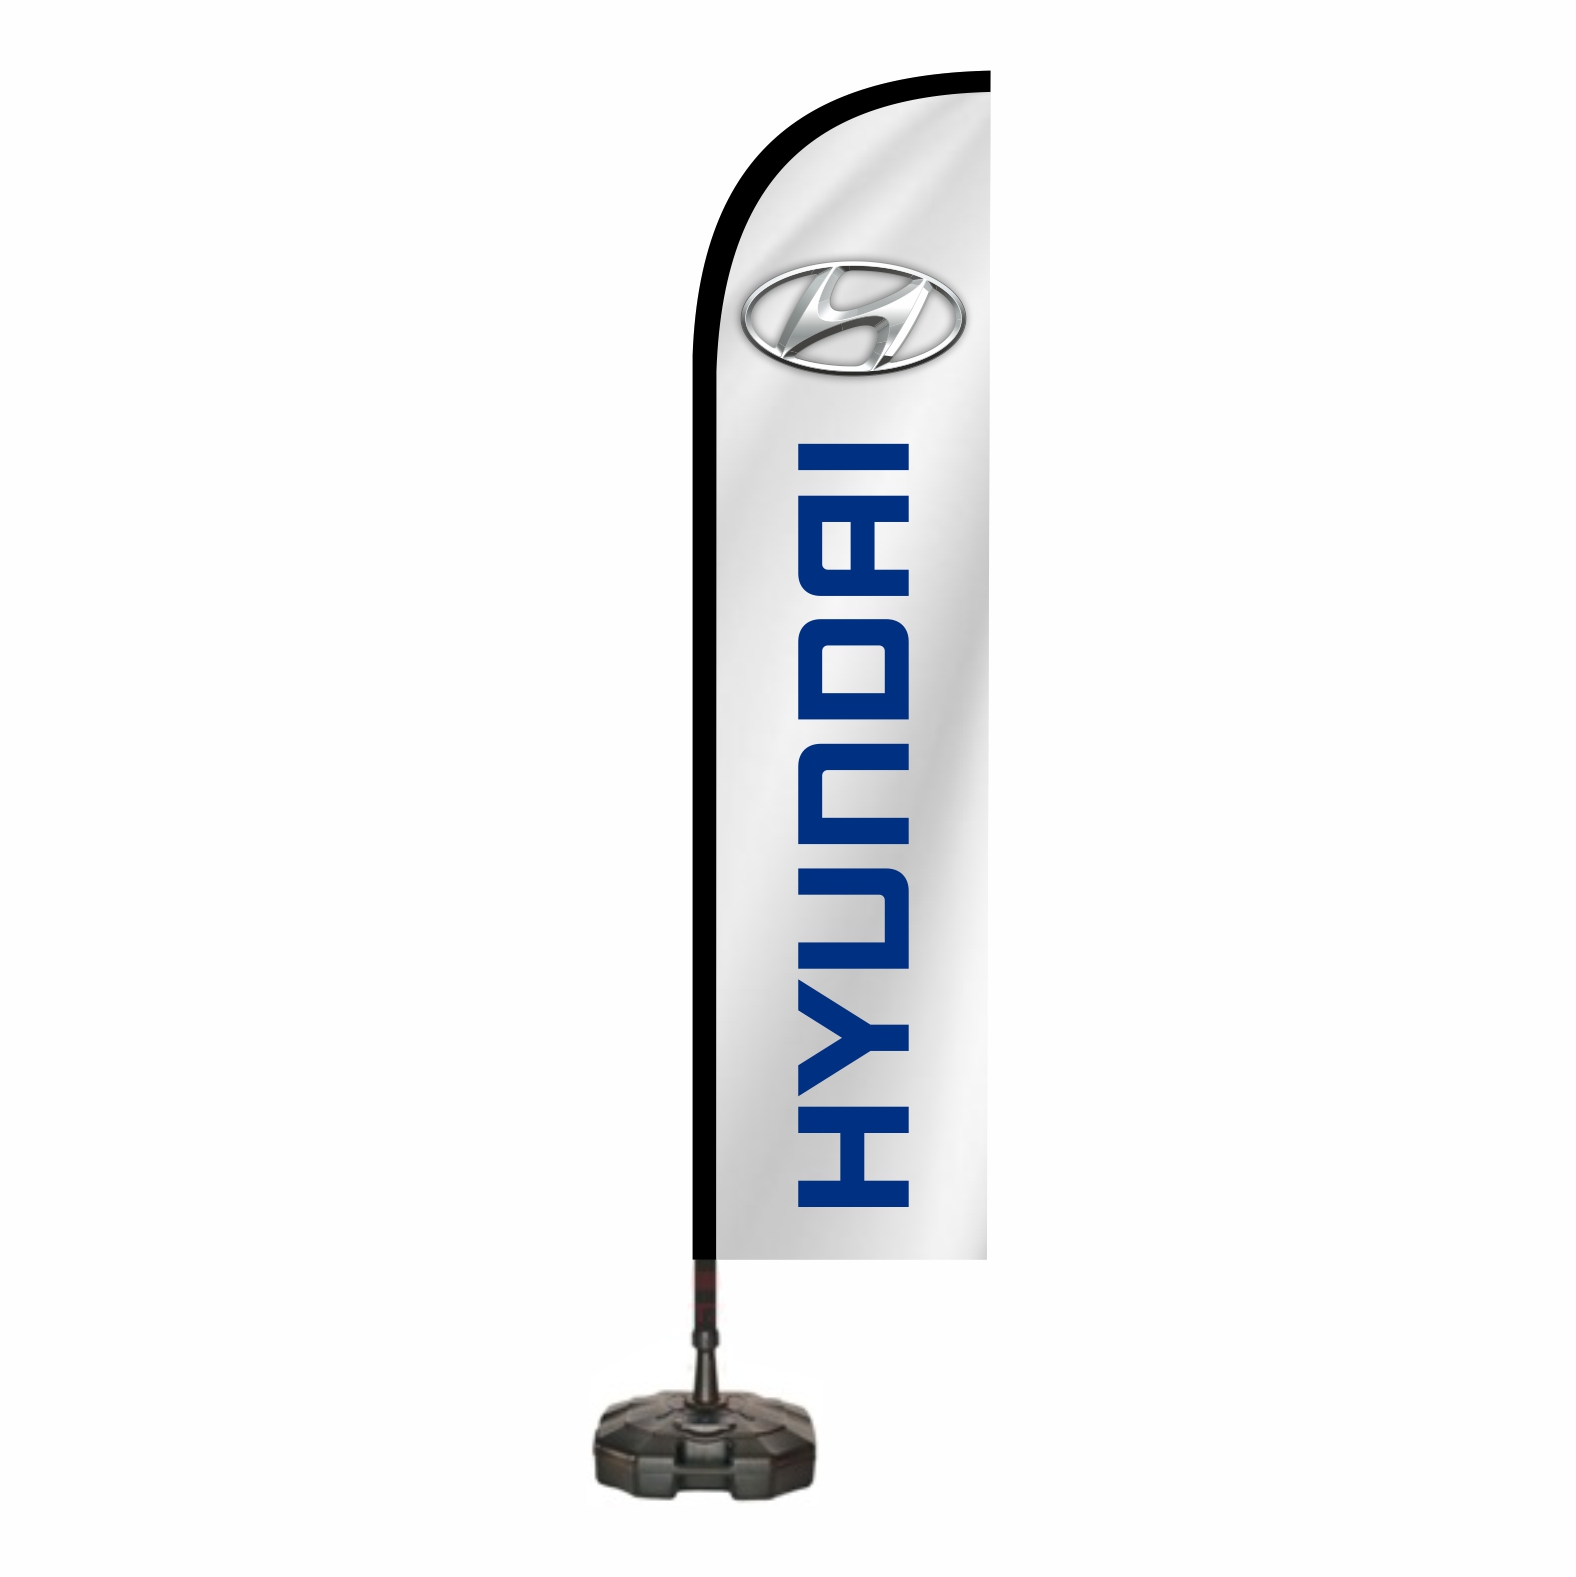 Hyundai Cadde Bayra nerede satlr